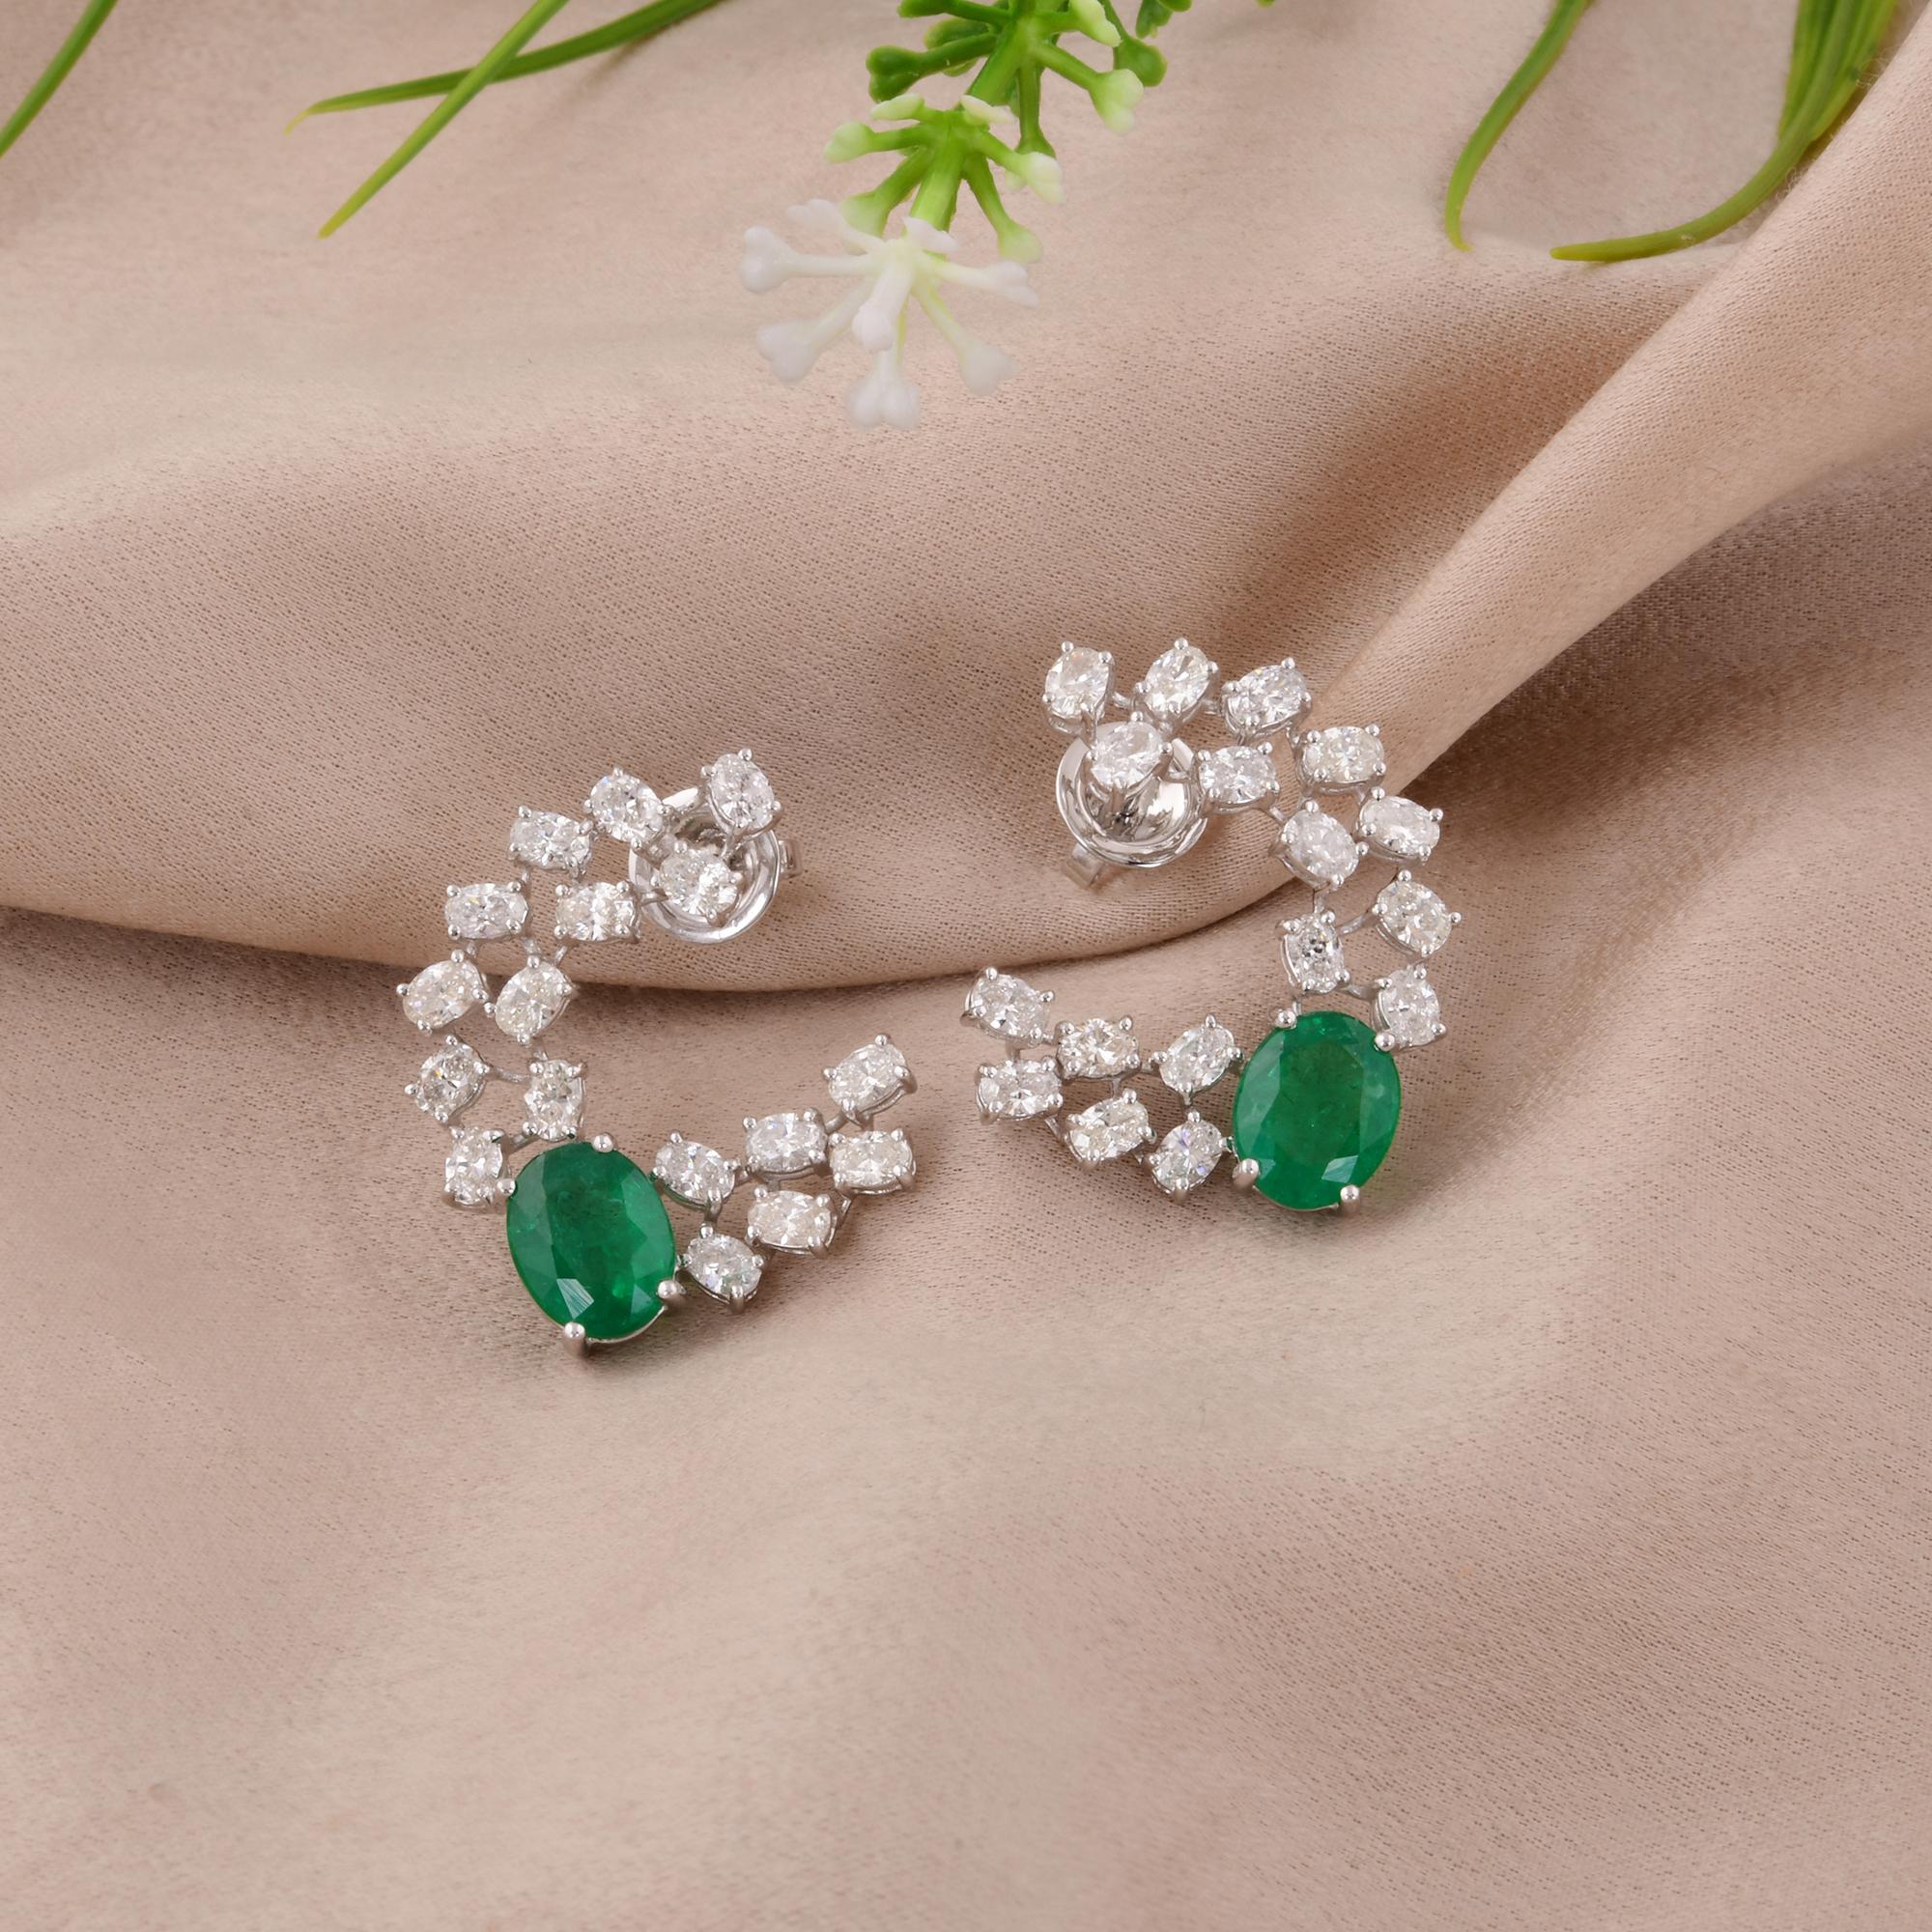 Modern Zambian Emerald Gemstone Earrings Oval Diamond 18 Karat White Gold Fine Jewelry For Sale